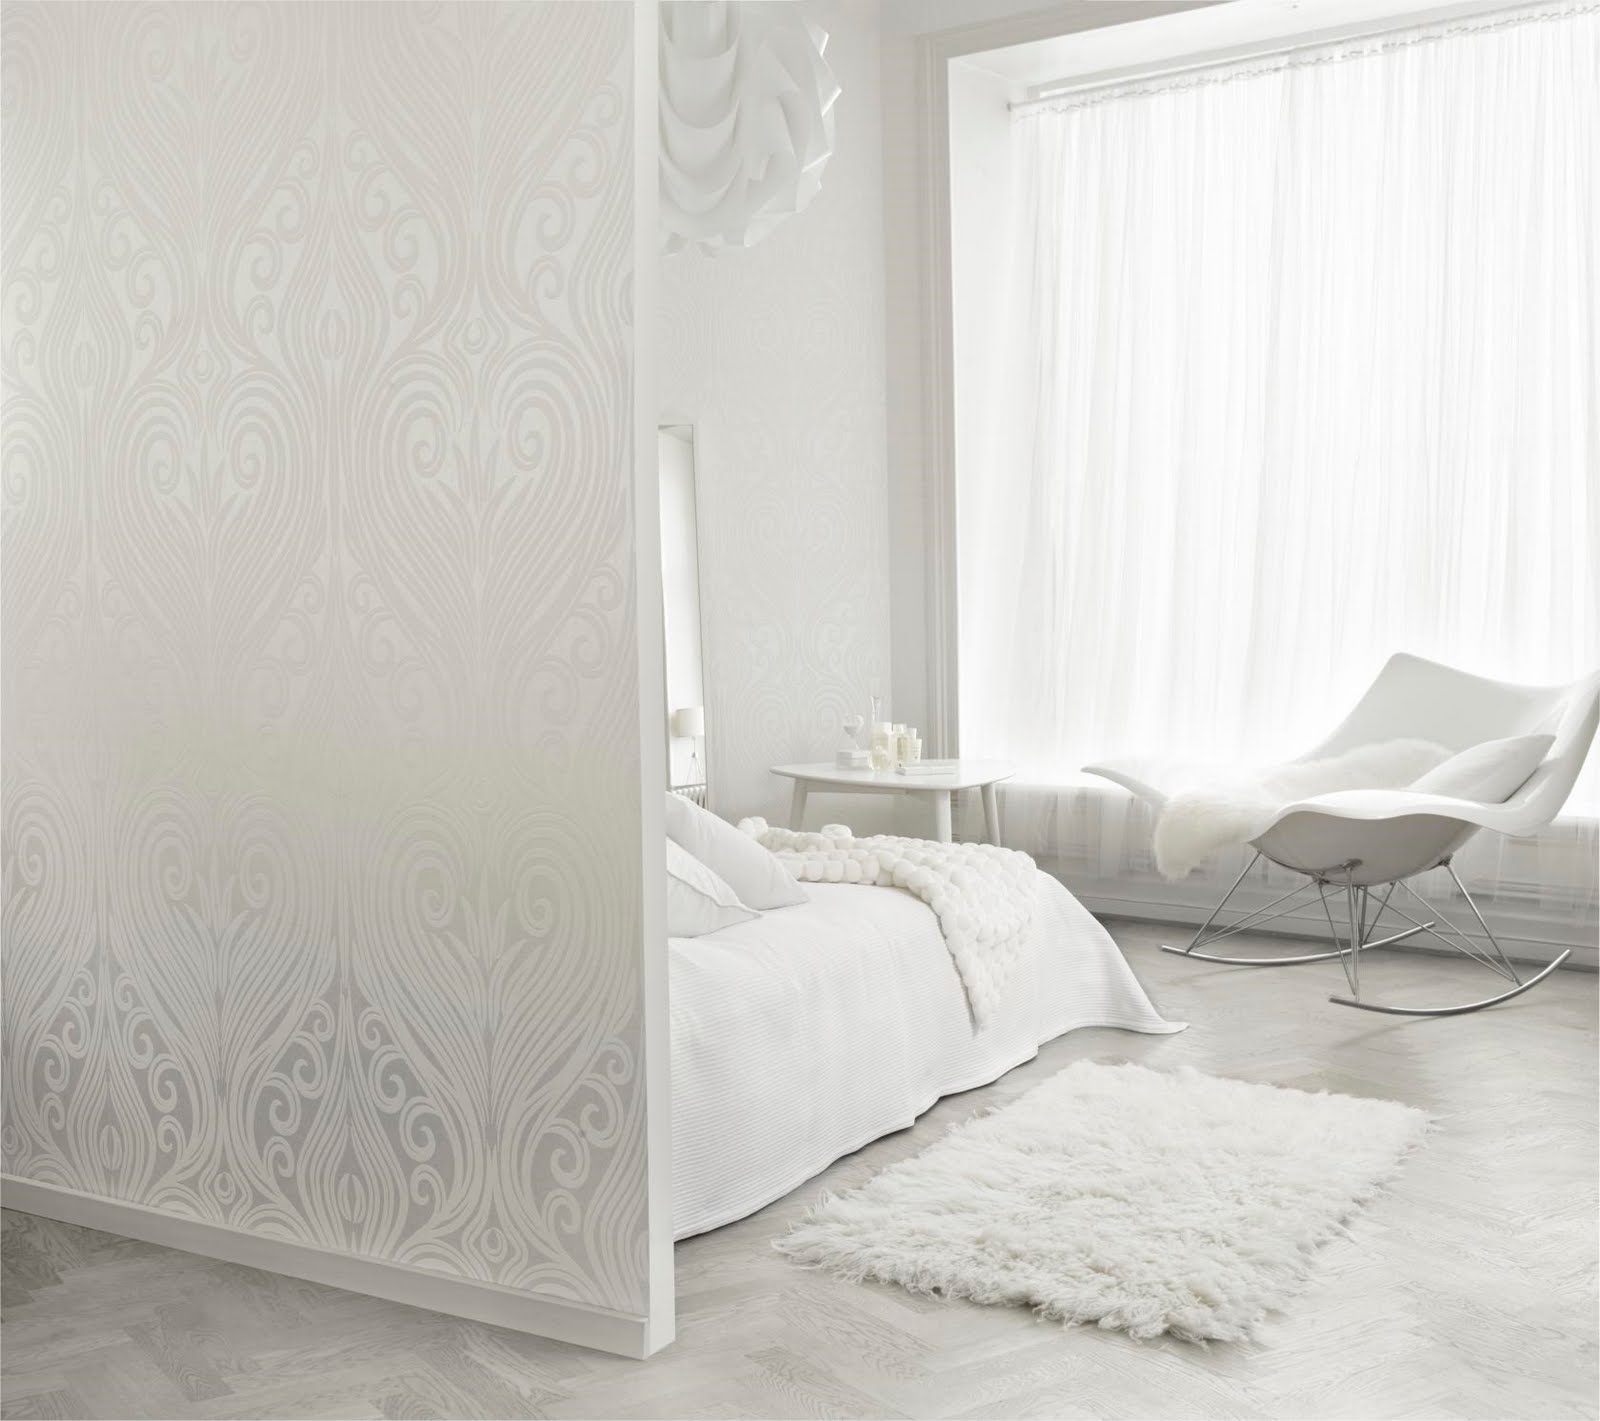  Design  Shimmer White  walls 